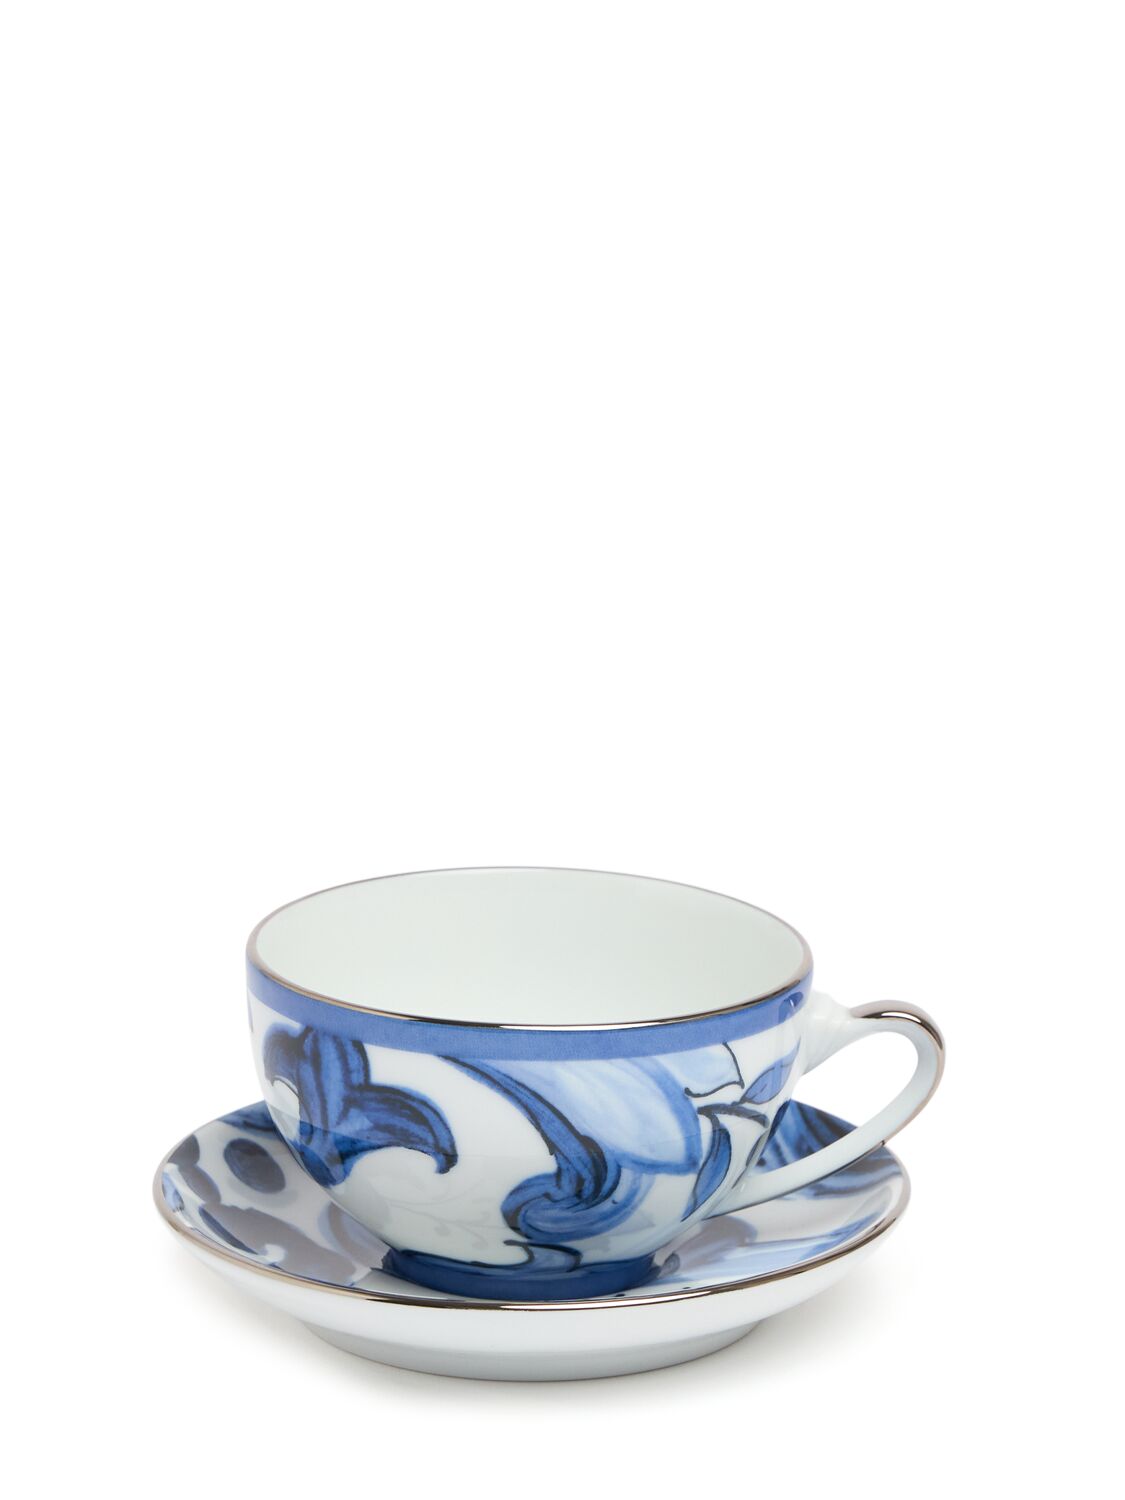 Dolce & Gabbana Blue Mediterraneo Teacup & Saucer